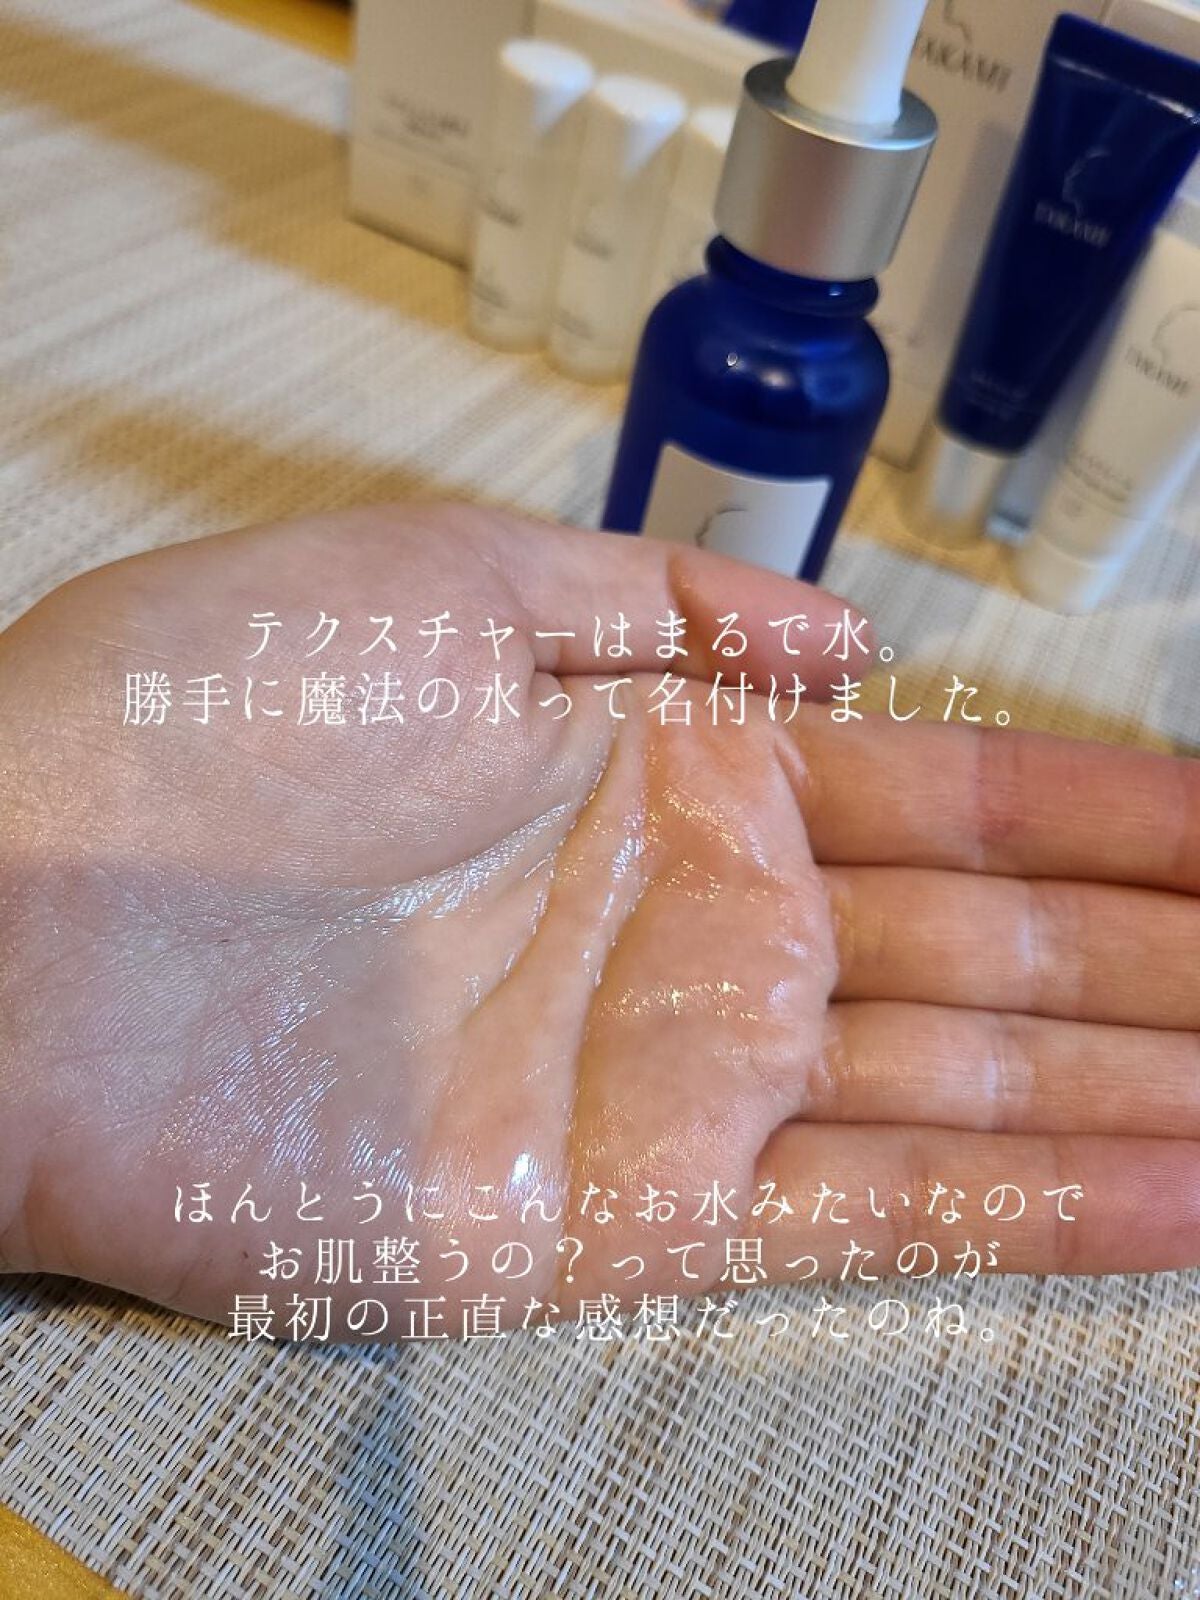 TAKAMI タカミ ローション Ⅱ 化粧水 高保湿 エッセンス CE - 化粧水